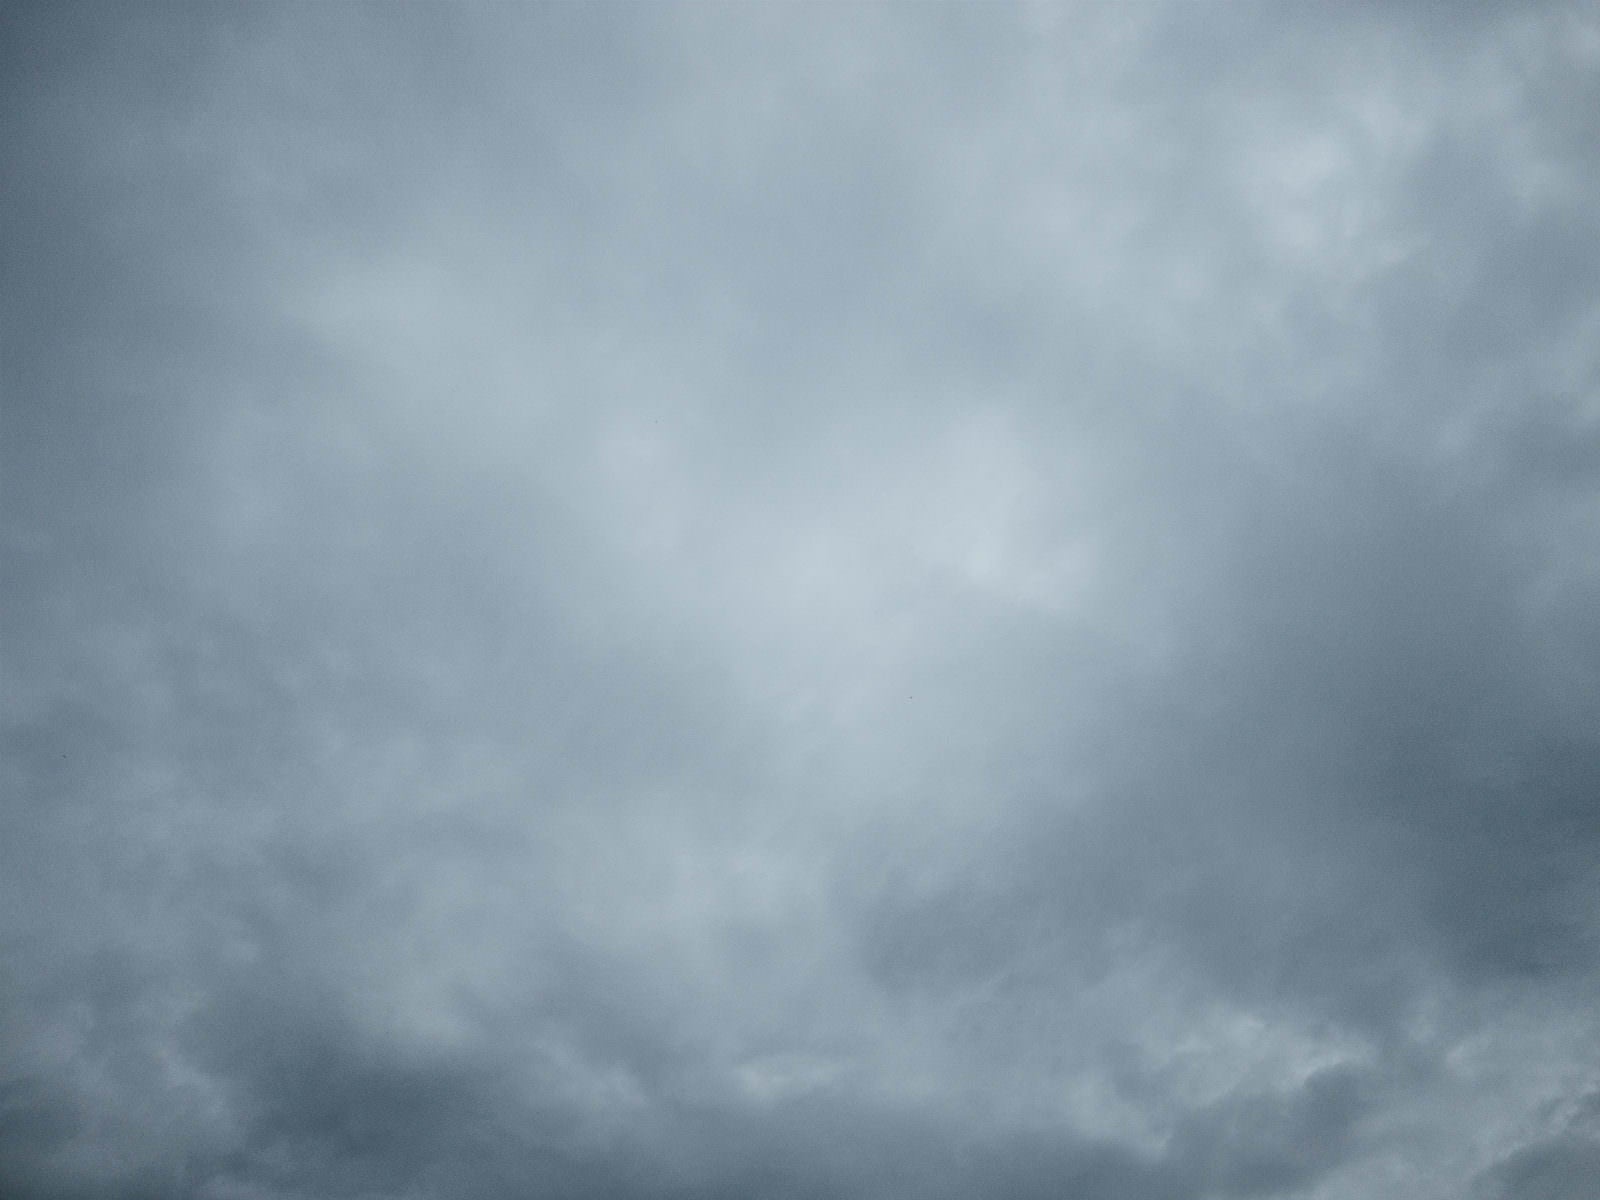 「どんより曇った空のテクスチャー」の写真